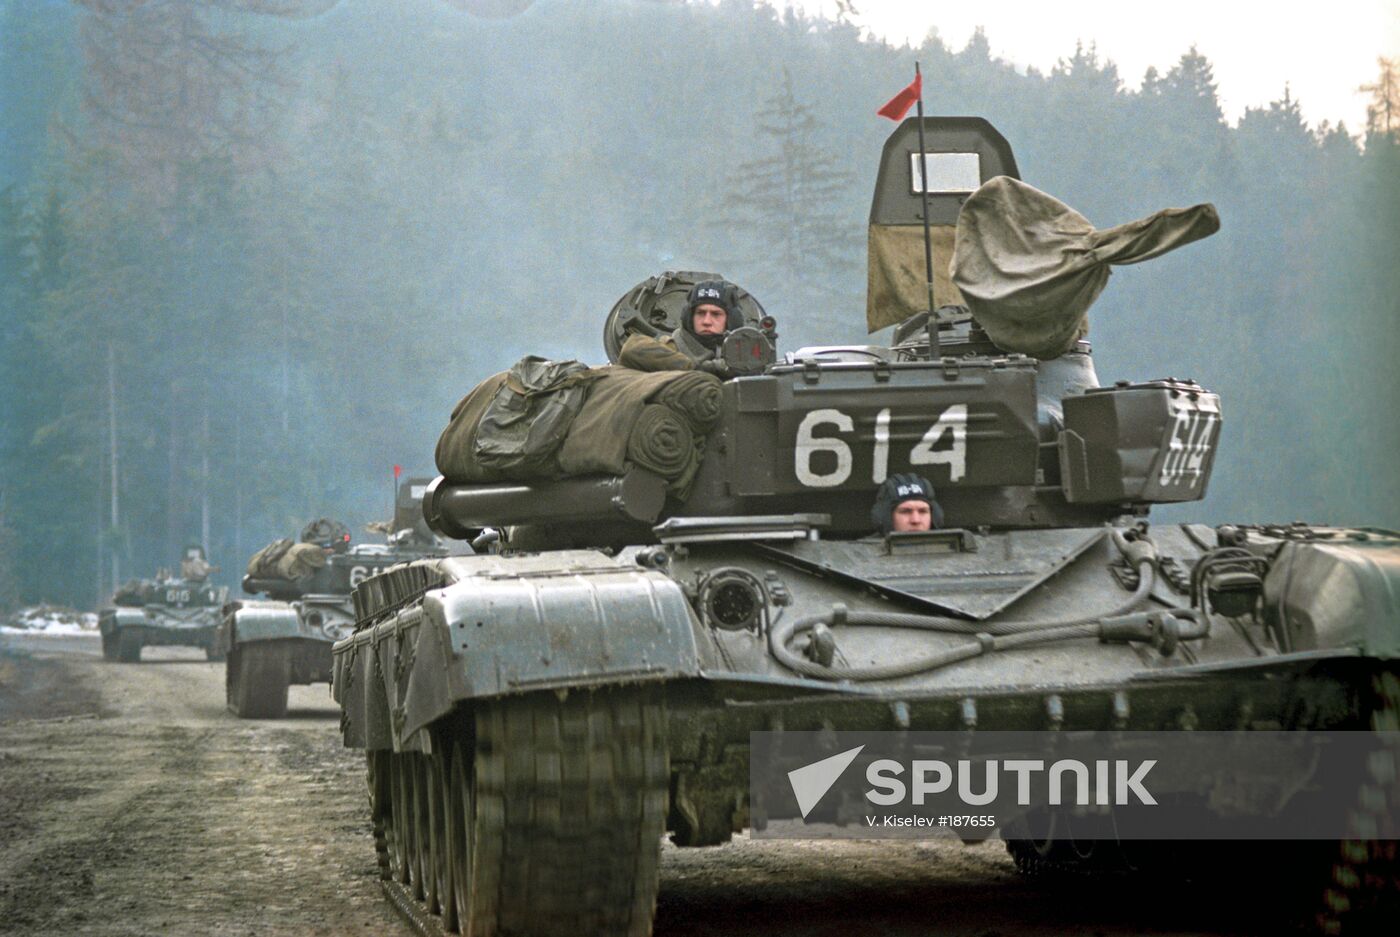 Soviet troops, tanks, Czech